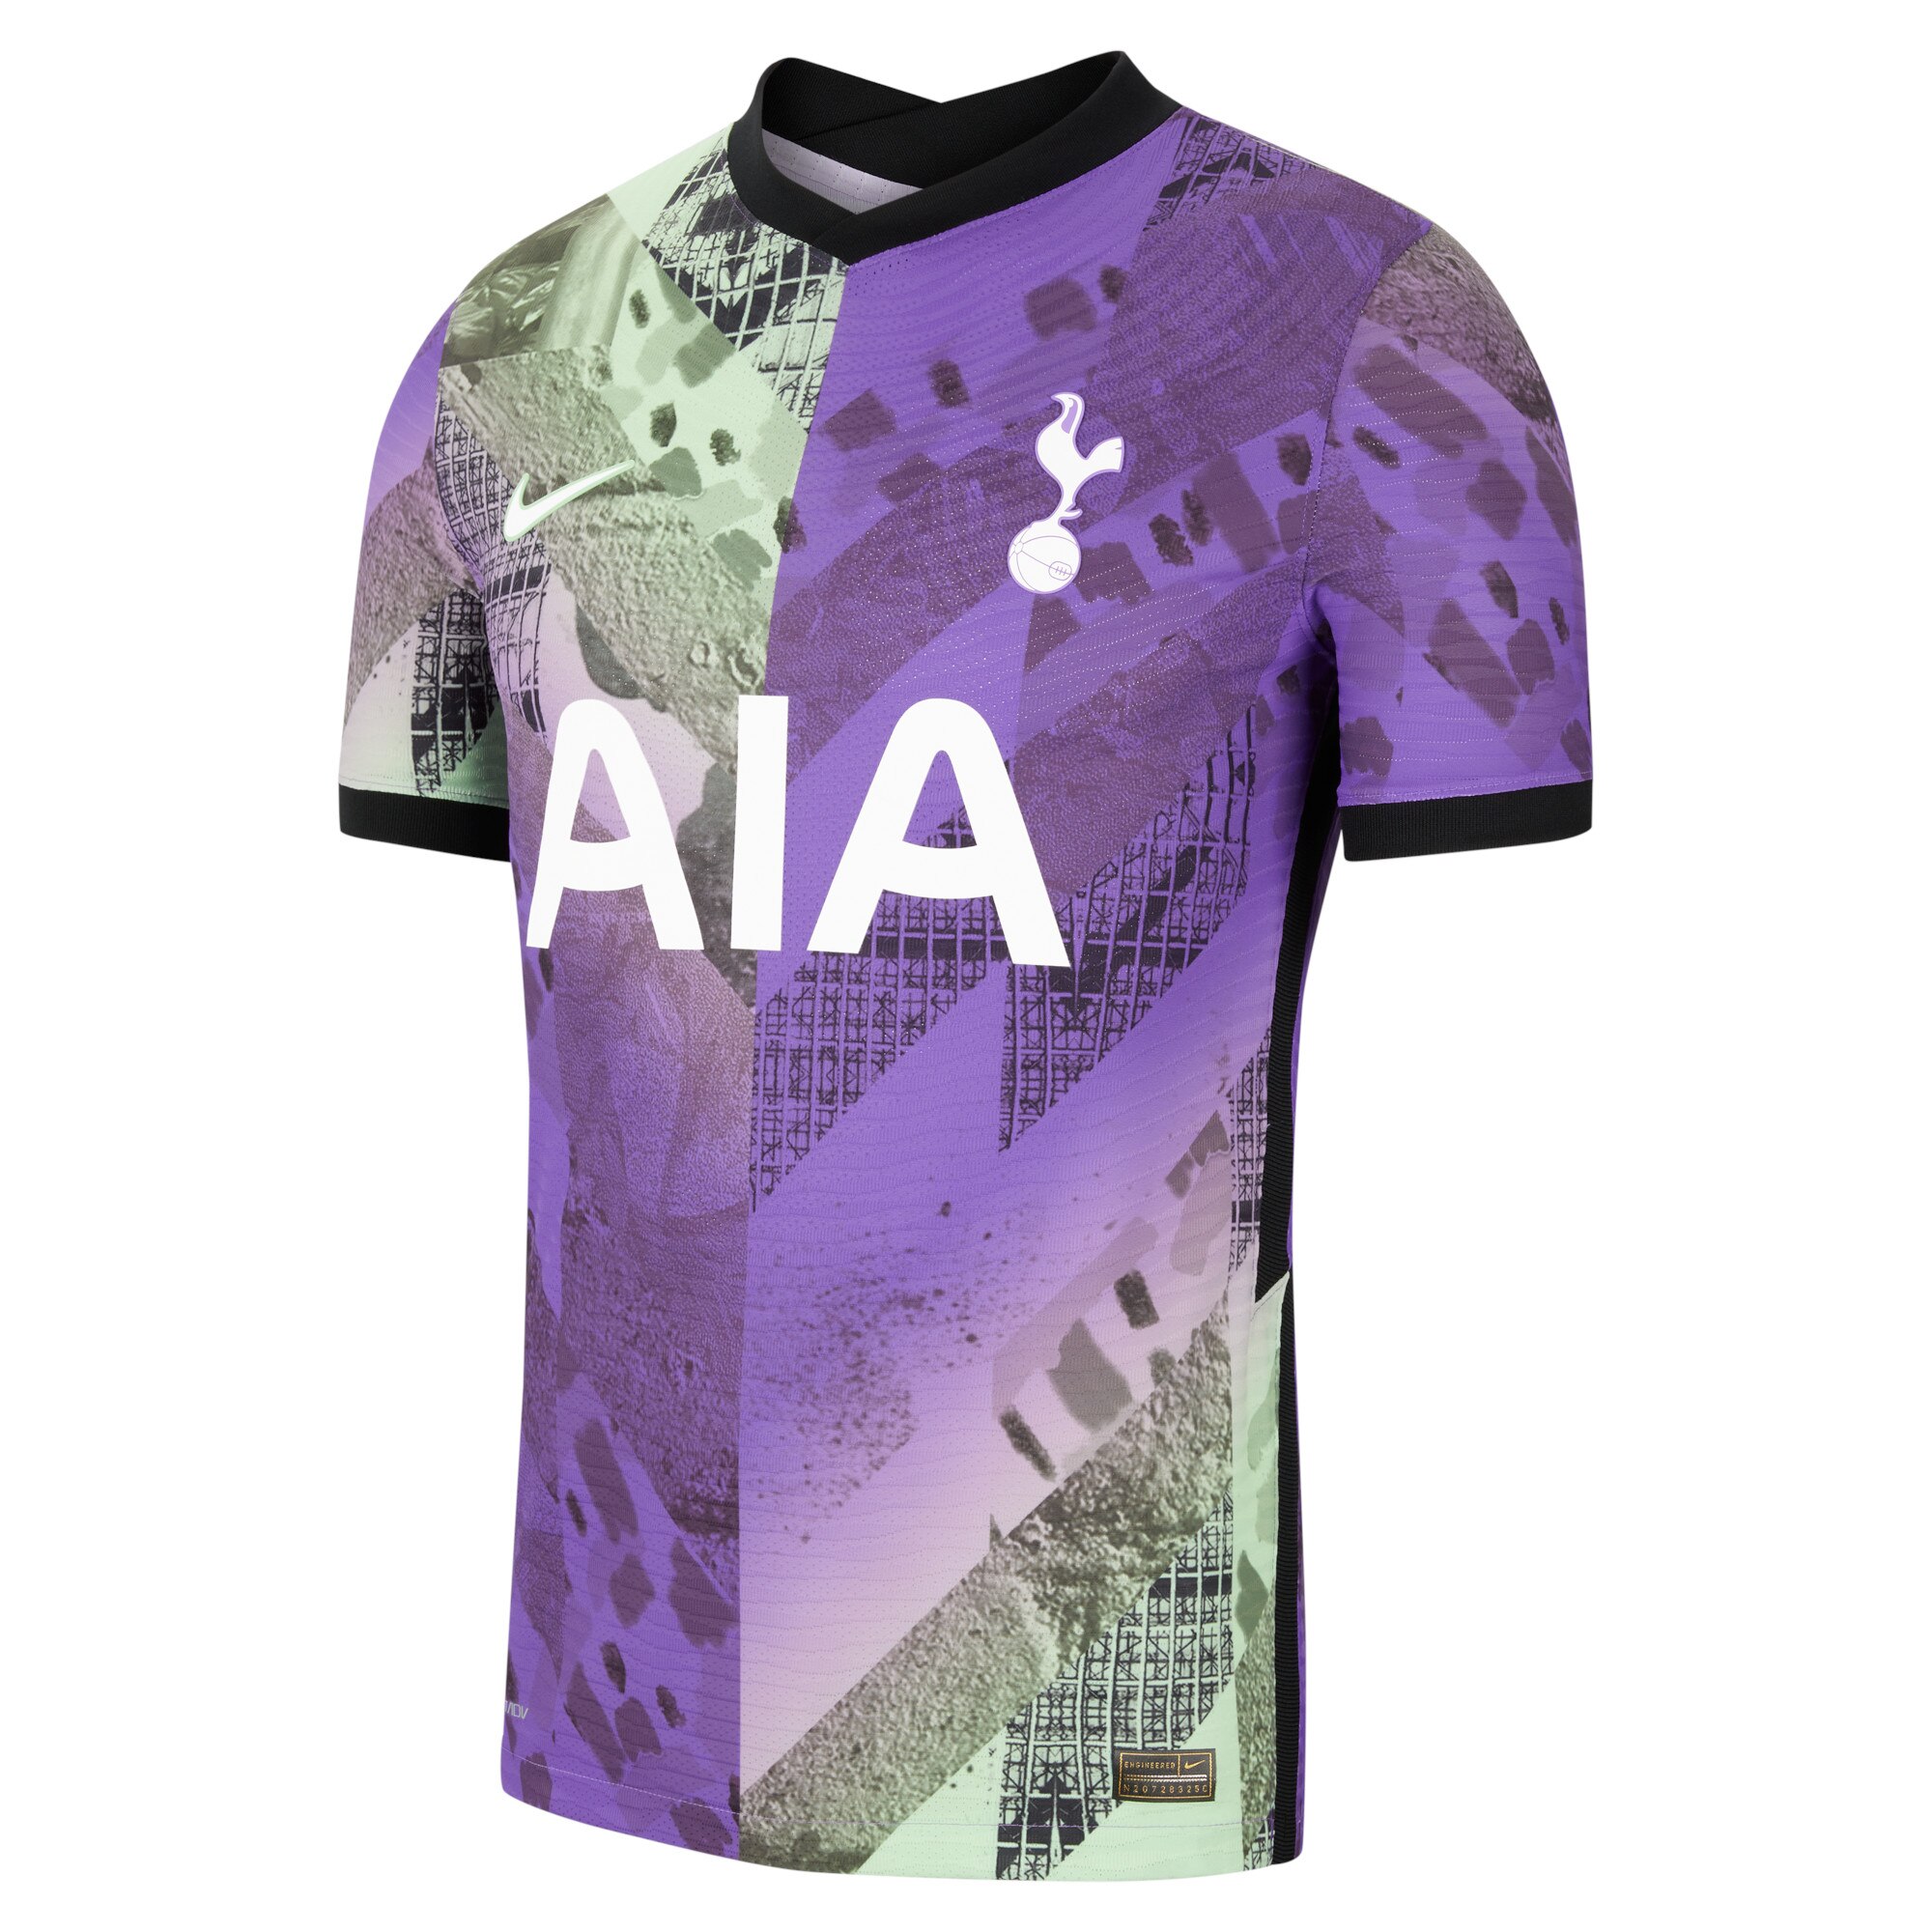 Tottenham Hotspur Third Vapor Match Shirt 2021-22